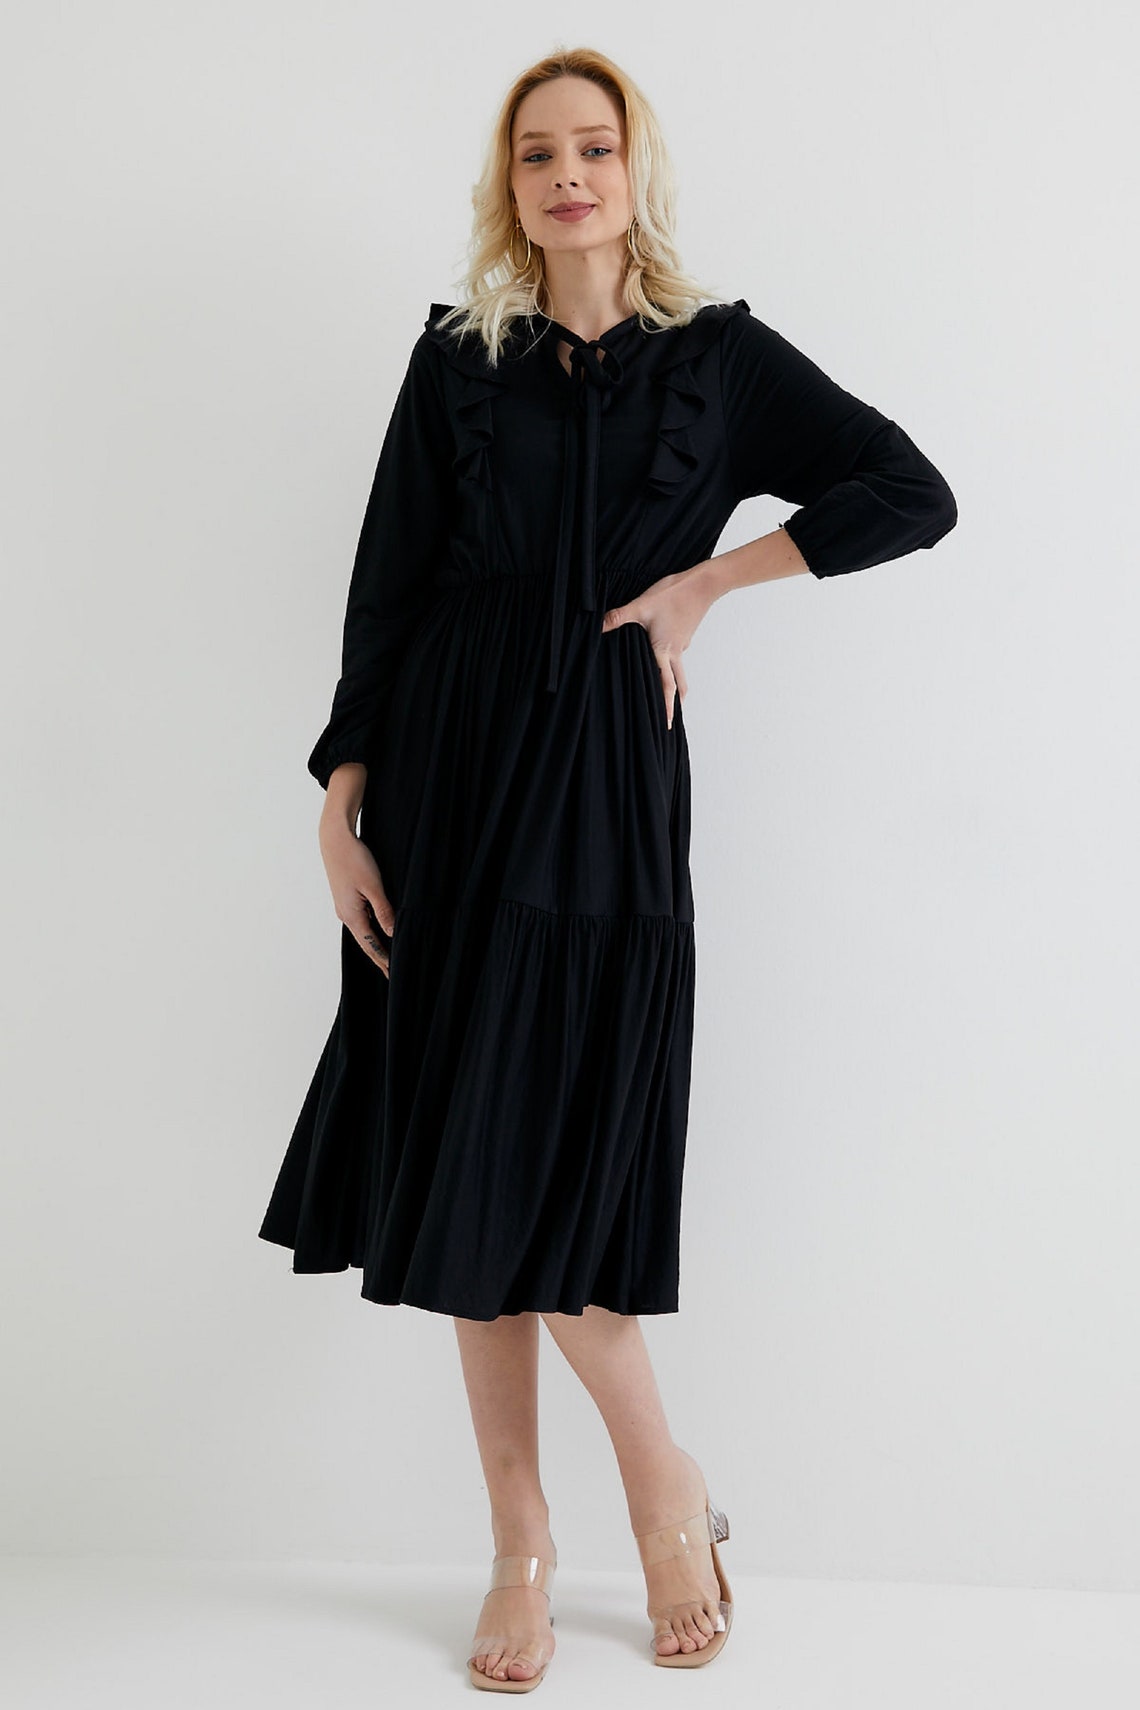 Womens Black Dress Black dress Long Black Dress Midi | Etsy